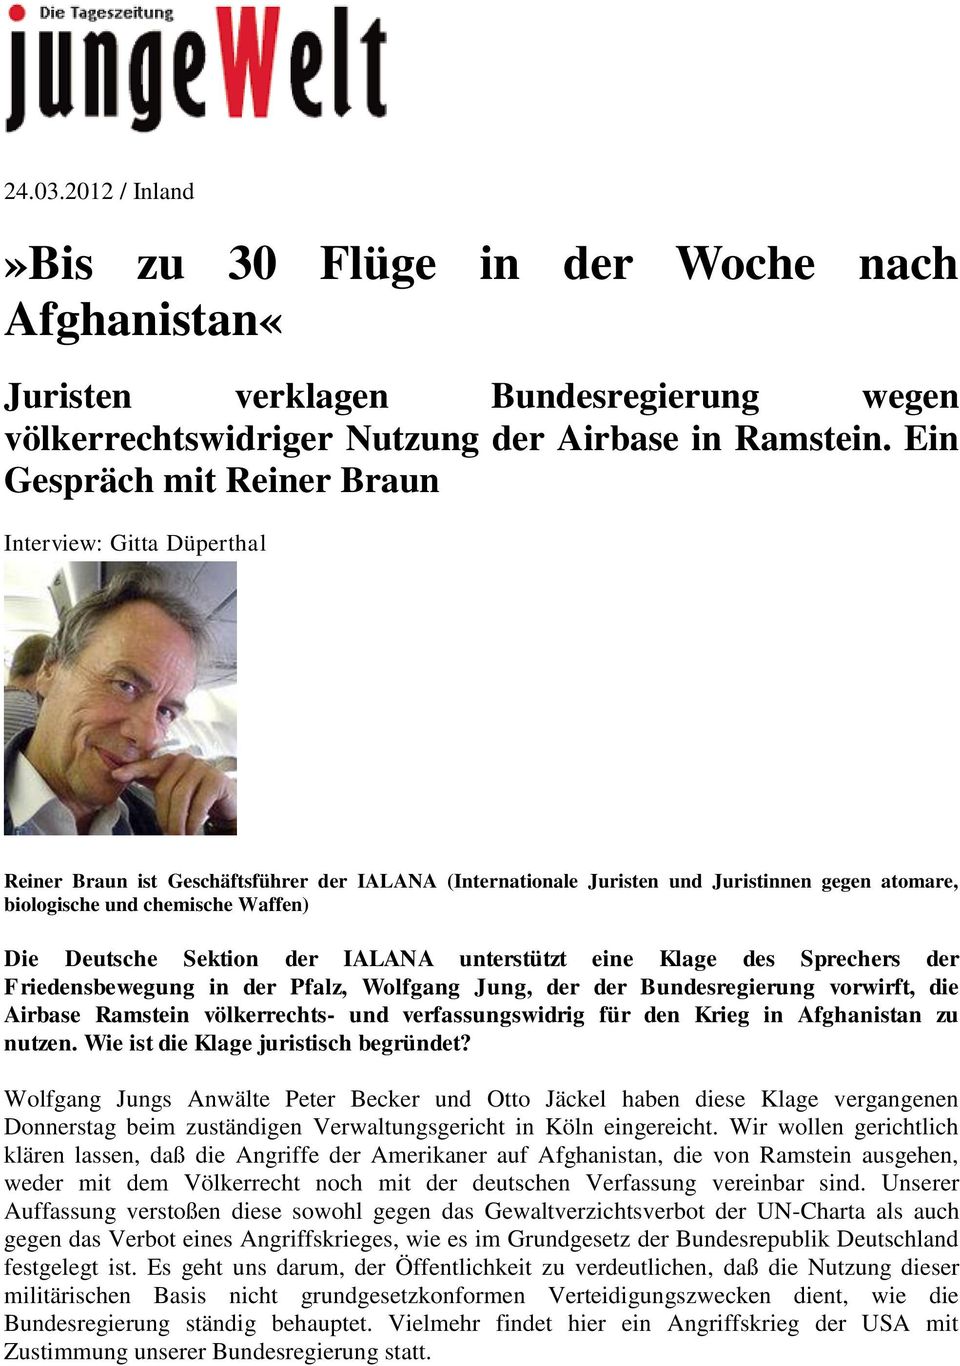 Deutsche Sektion der IALANA unterstützt eine Klage des Sprechers der Friedensbewegung in der Pfalz, Wolfgang Jung, der der Bundesregierung vorwirft, die Airbase Ramstein völkerrechts- und